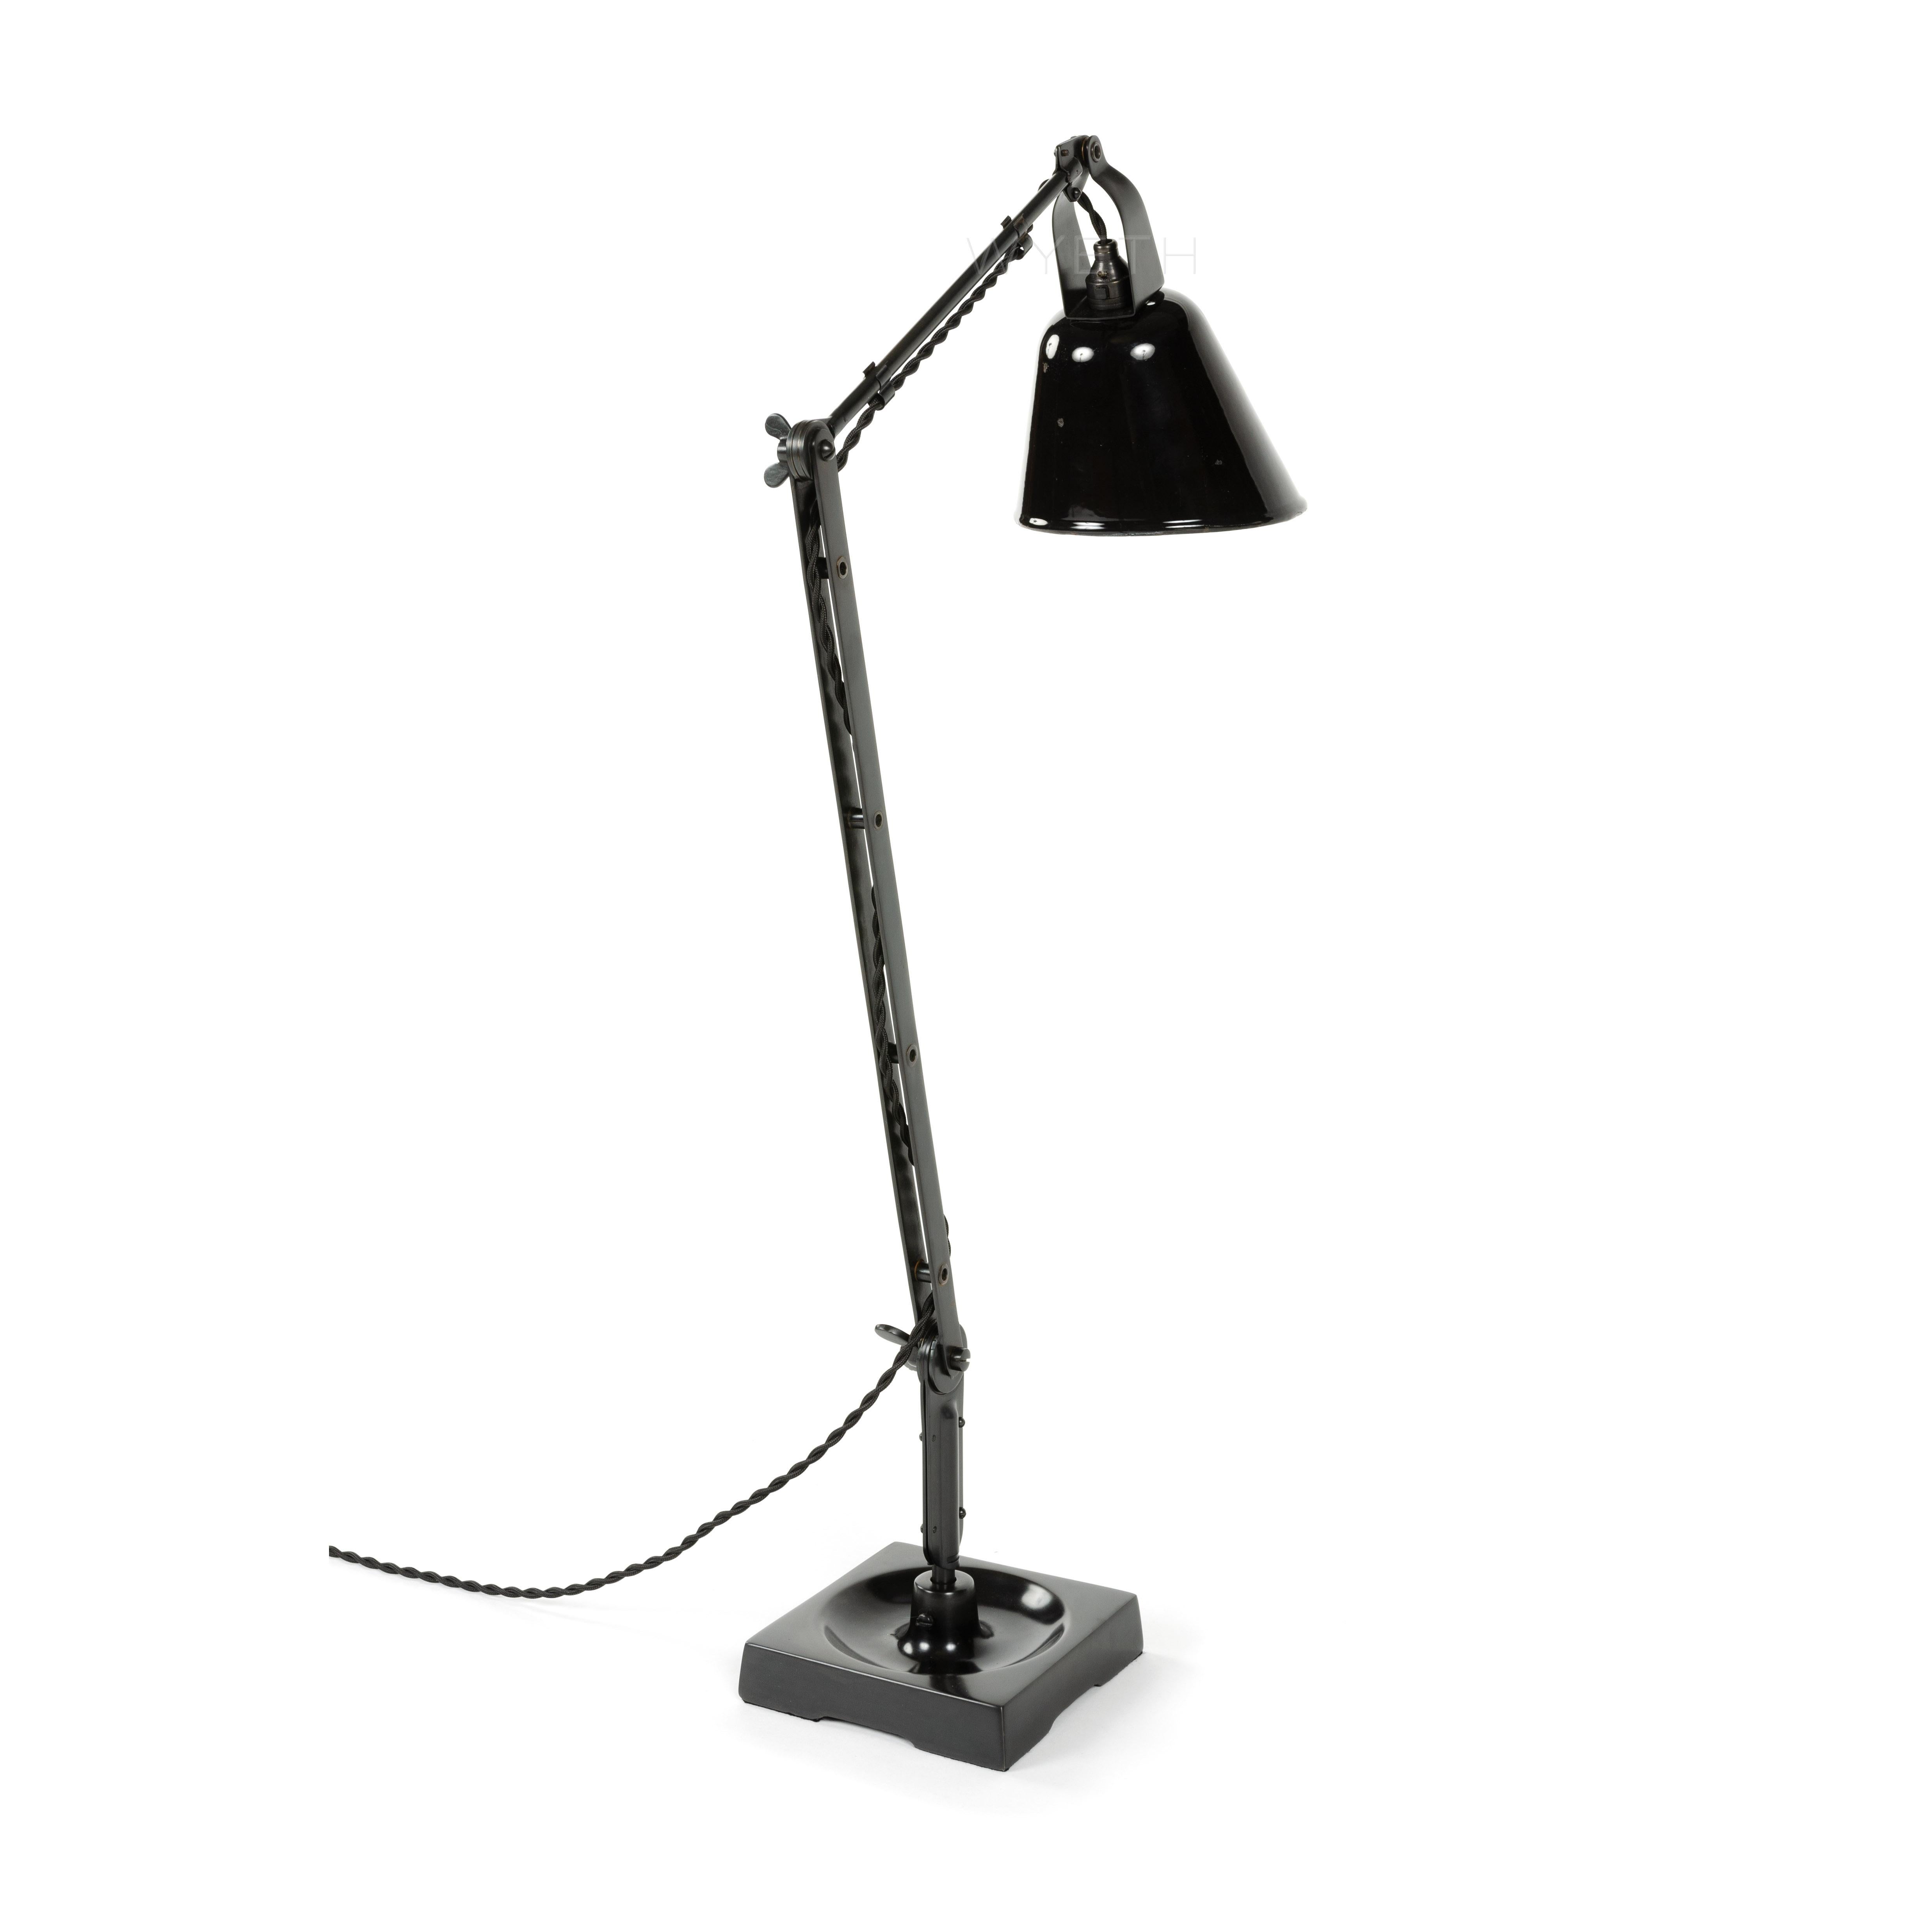 Gelenkige Zonalit-Schreibtischlampe mit schwenkbarem, schwarz-weiß emailliertem Schirm und quadratischem Sockel mit Graben.